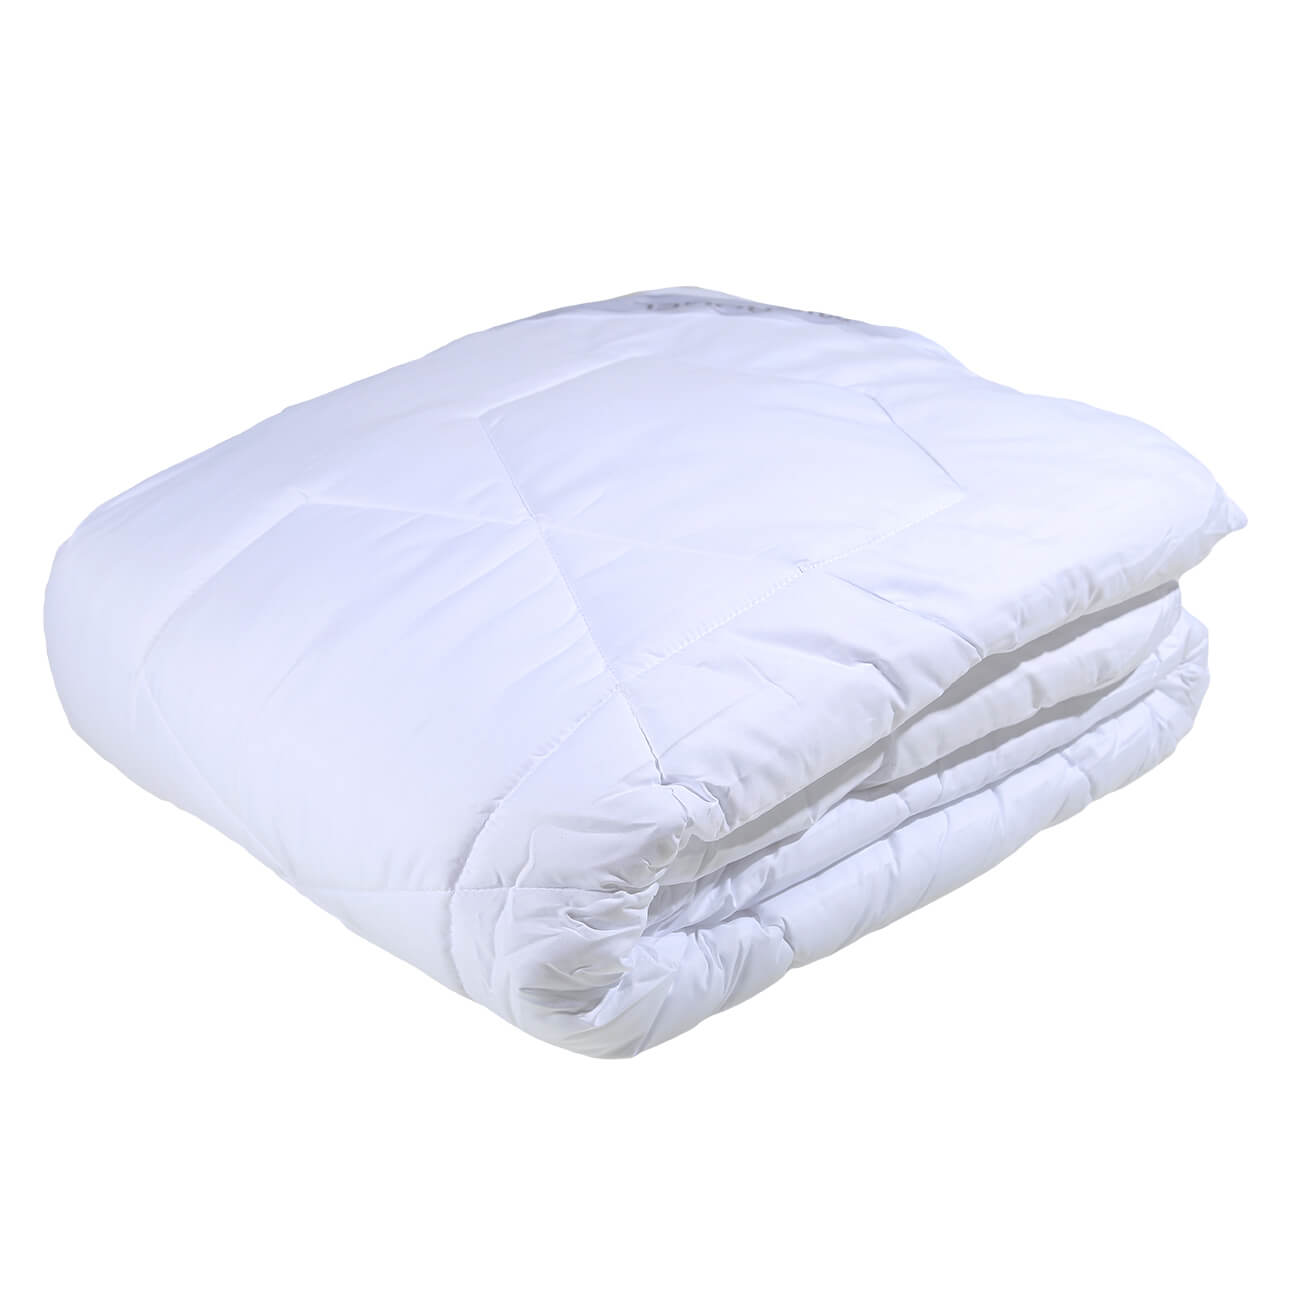 Одеяло, 200x220 cм, микрофибра/микрогель, Microgel одеяло inspire лебяжий пух 200x220 см